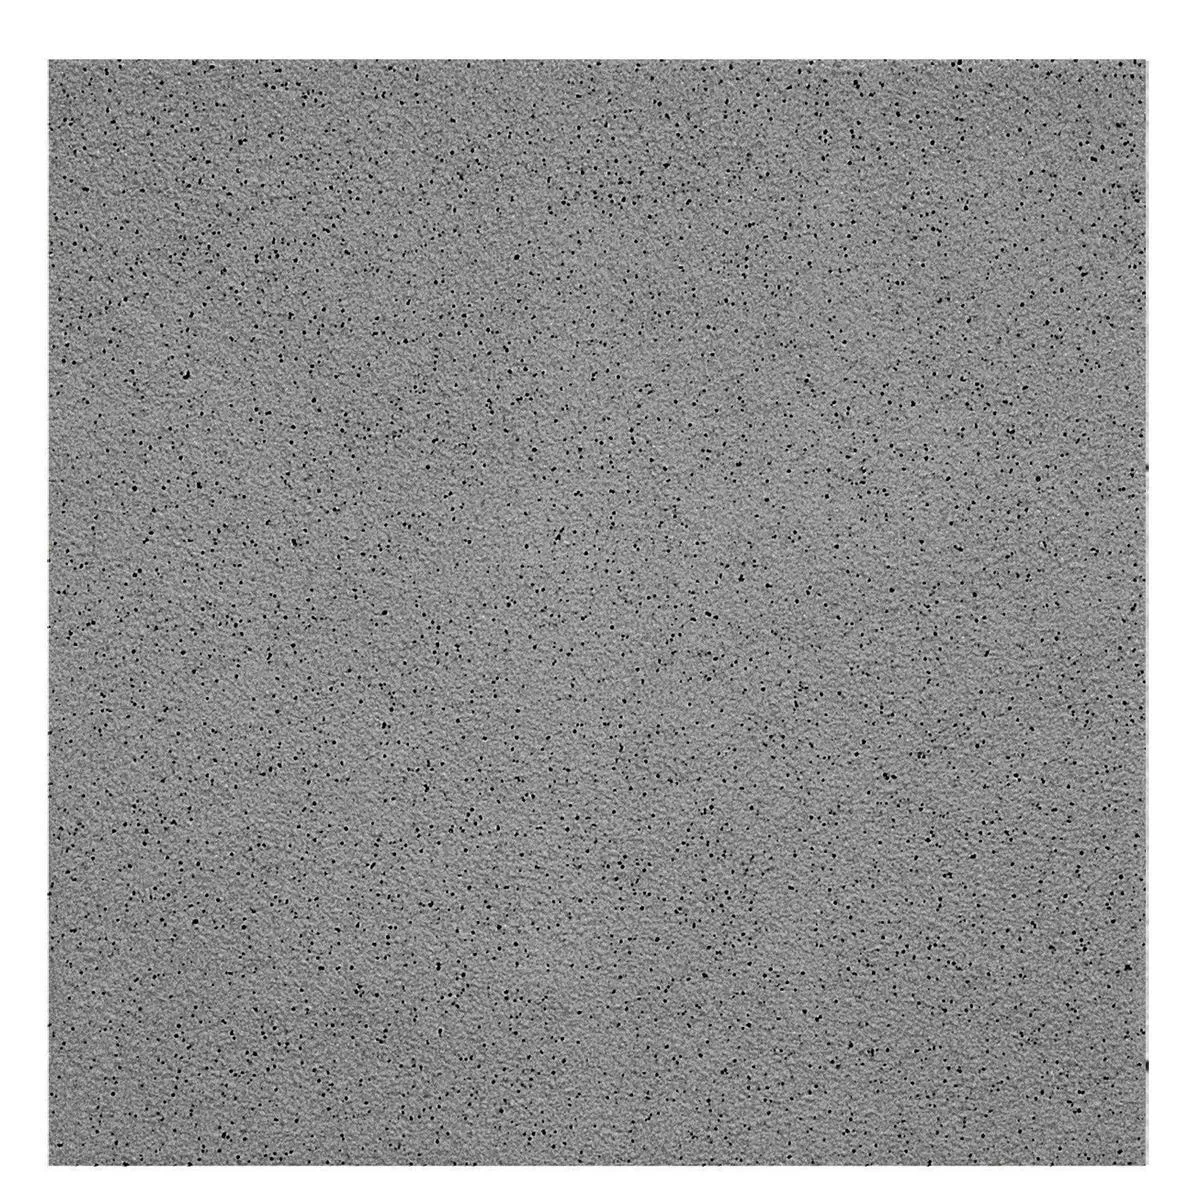 Sample Vloertegels Fijne Korrel R11/B Antraciet 15x15cm